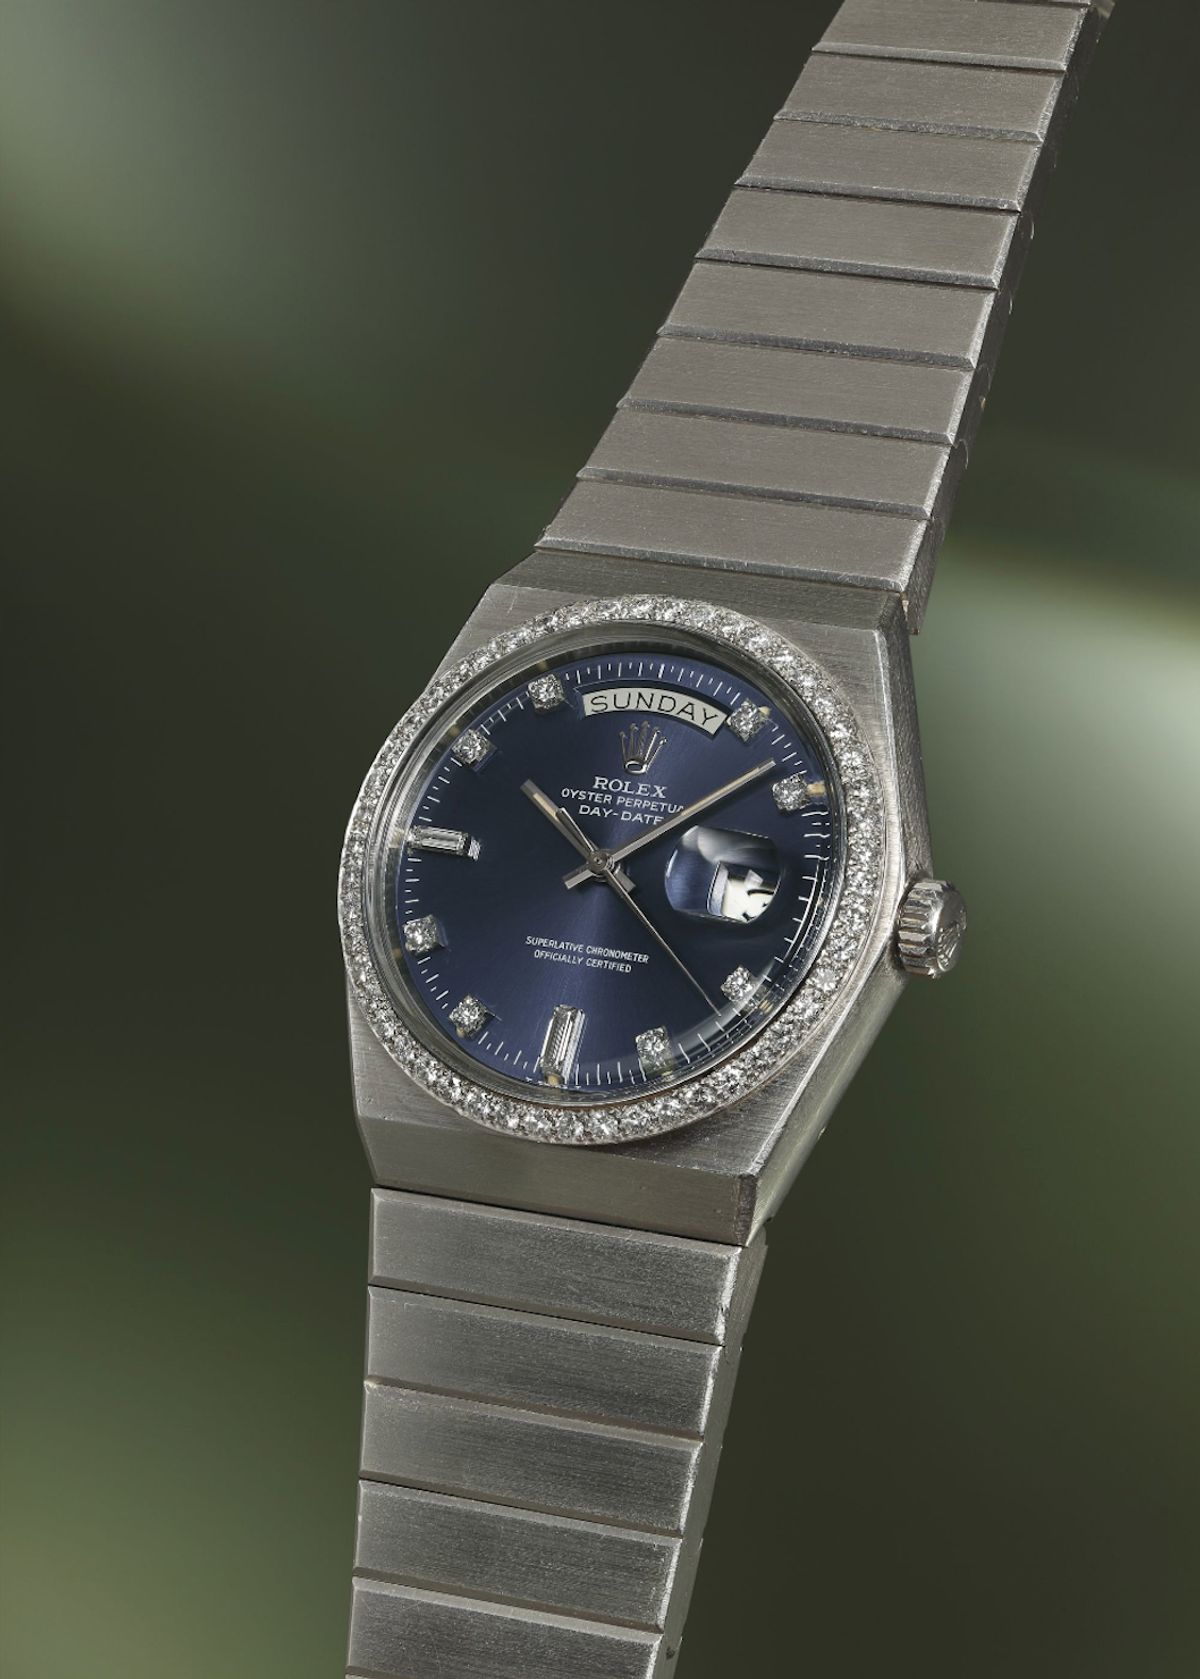 Most Unusual Rolex Watches Rolex Day-Date 1831 Platinum